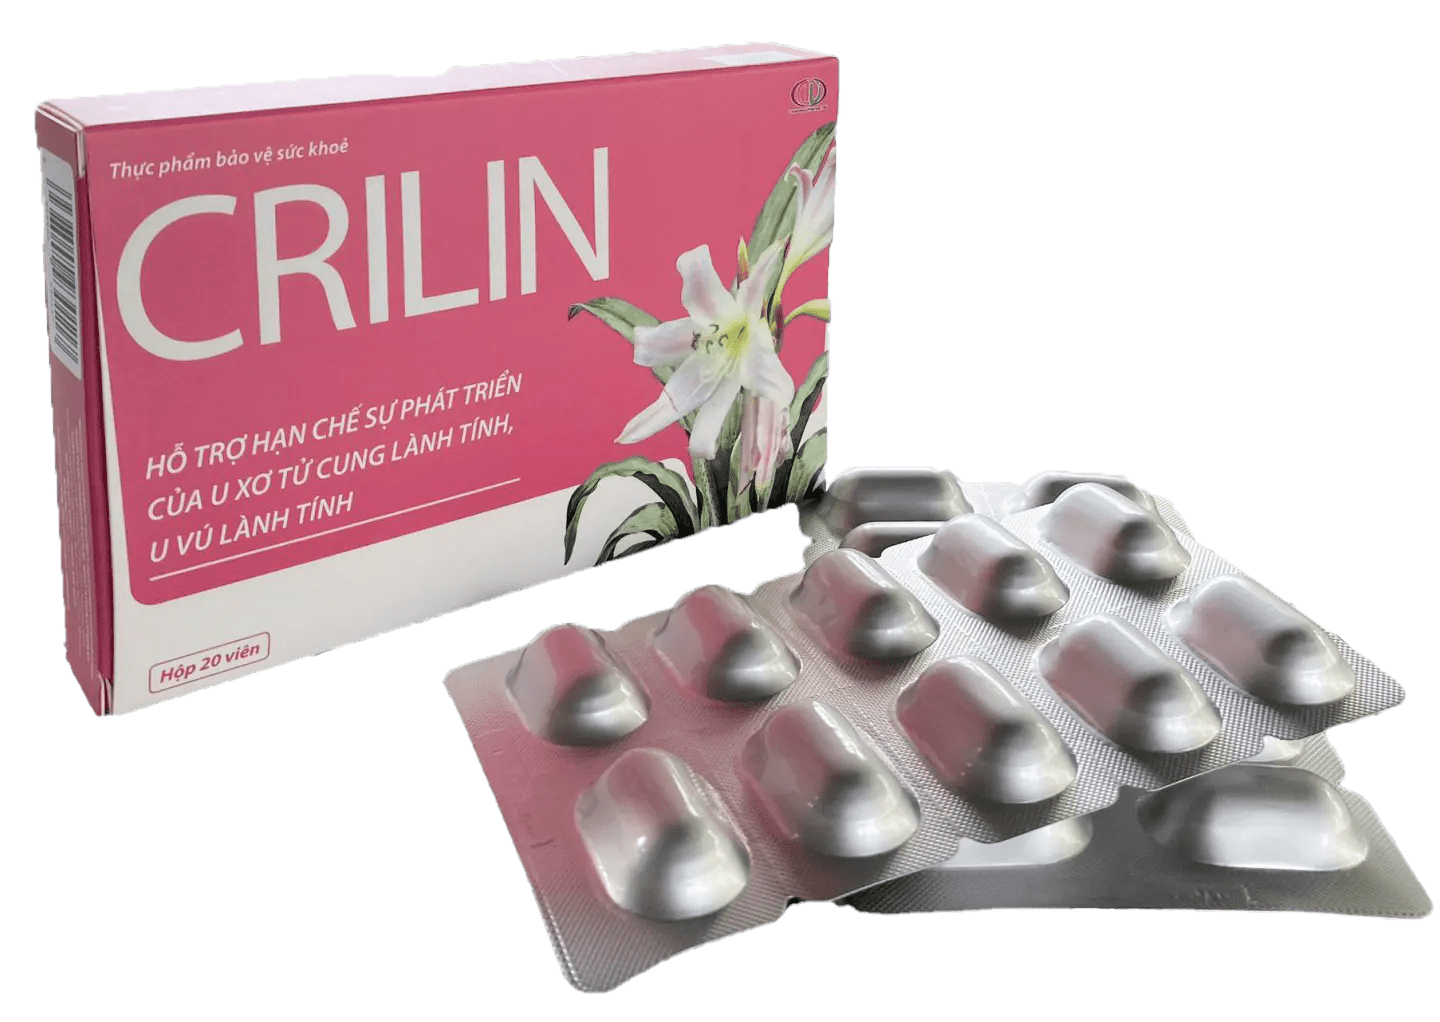 Thực phẩm bảo vệ sức khỏe CRILIN